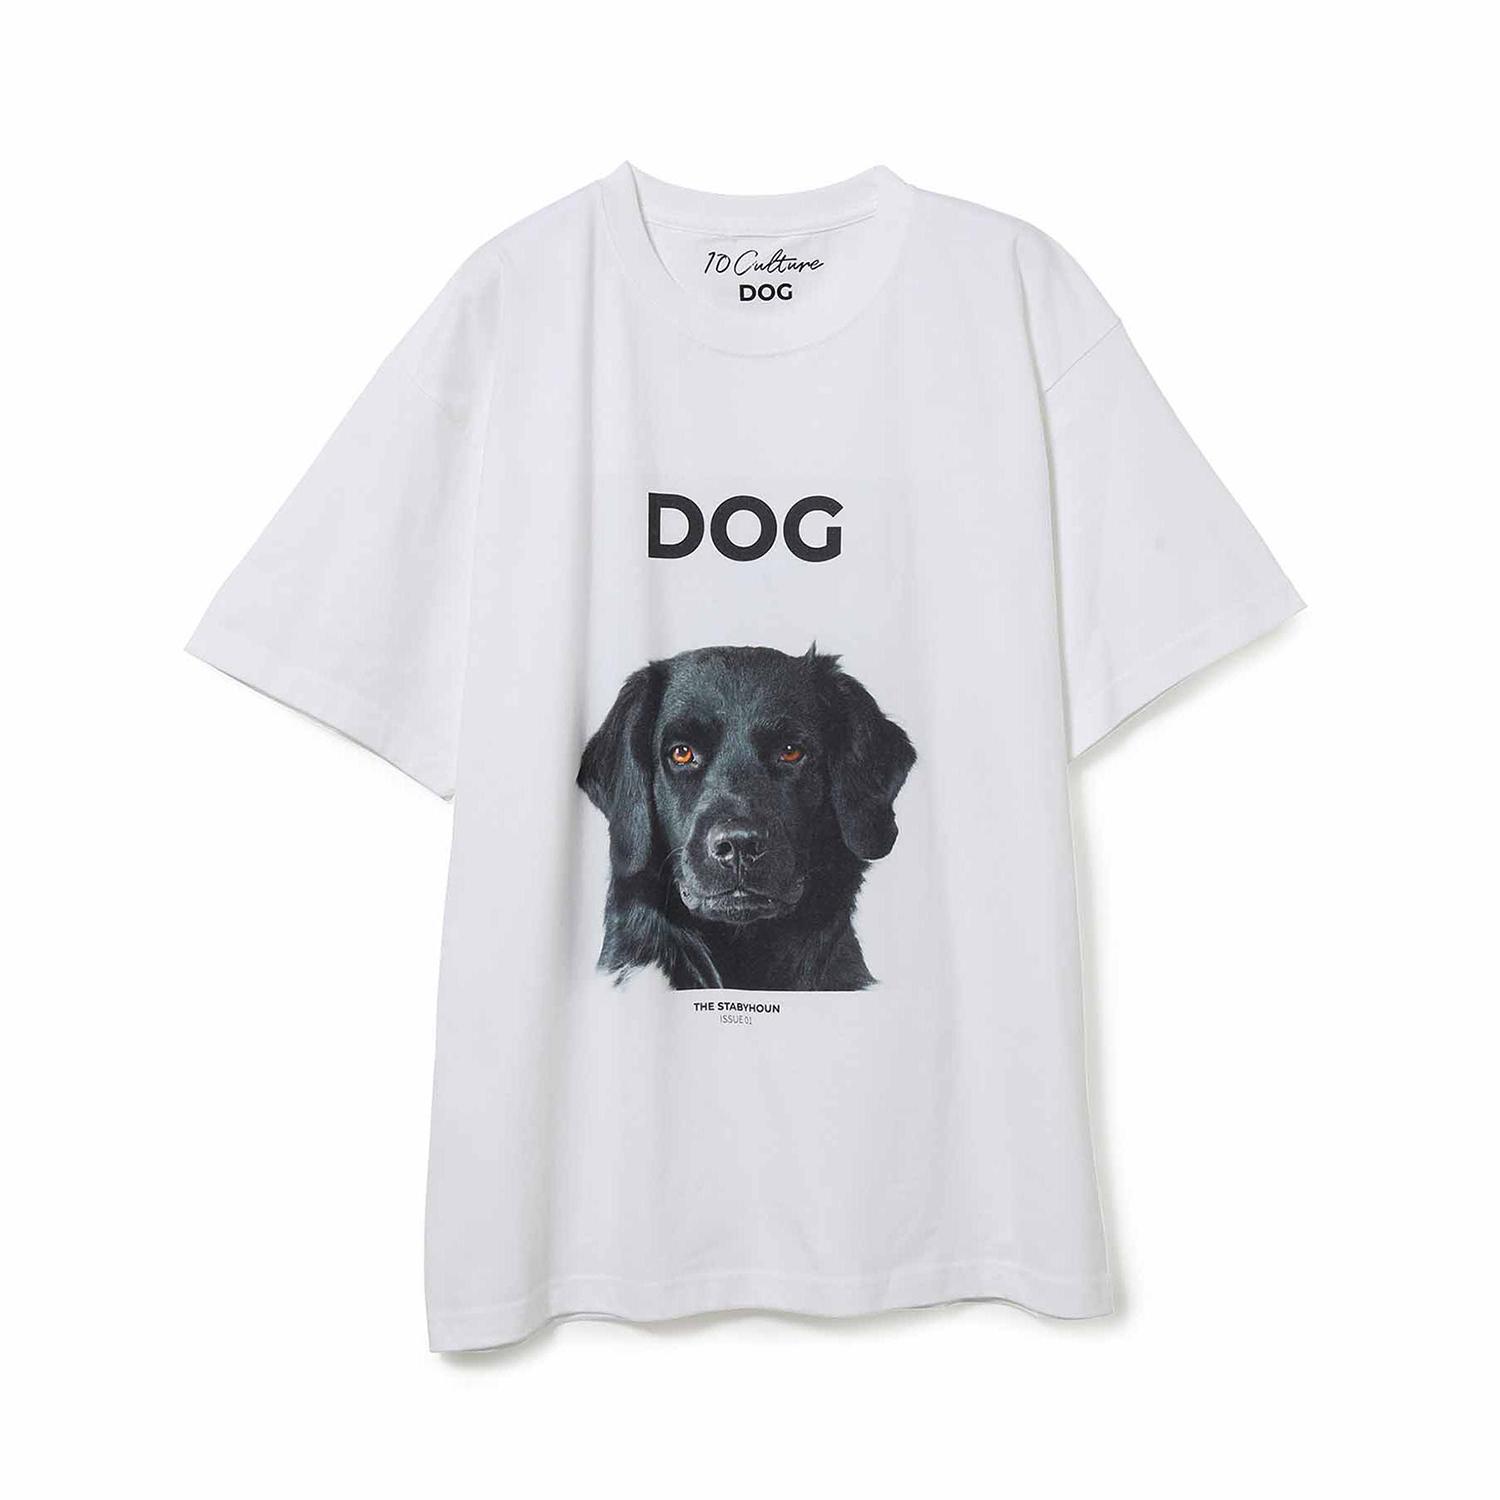 ドリス・ヴァン・ノッテンの愛犬も登場。ロンドンの『DOG MAGAZINE』と